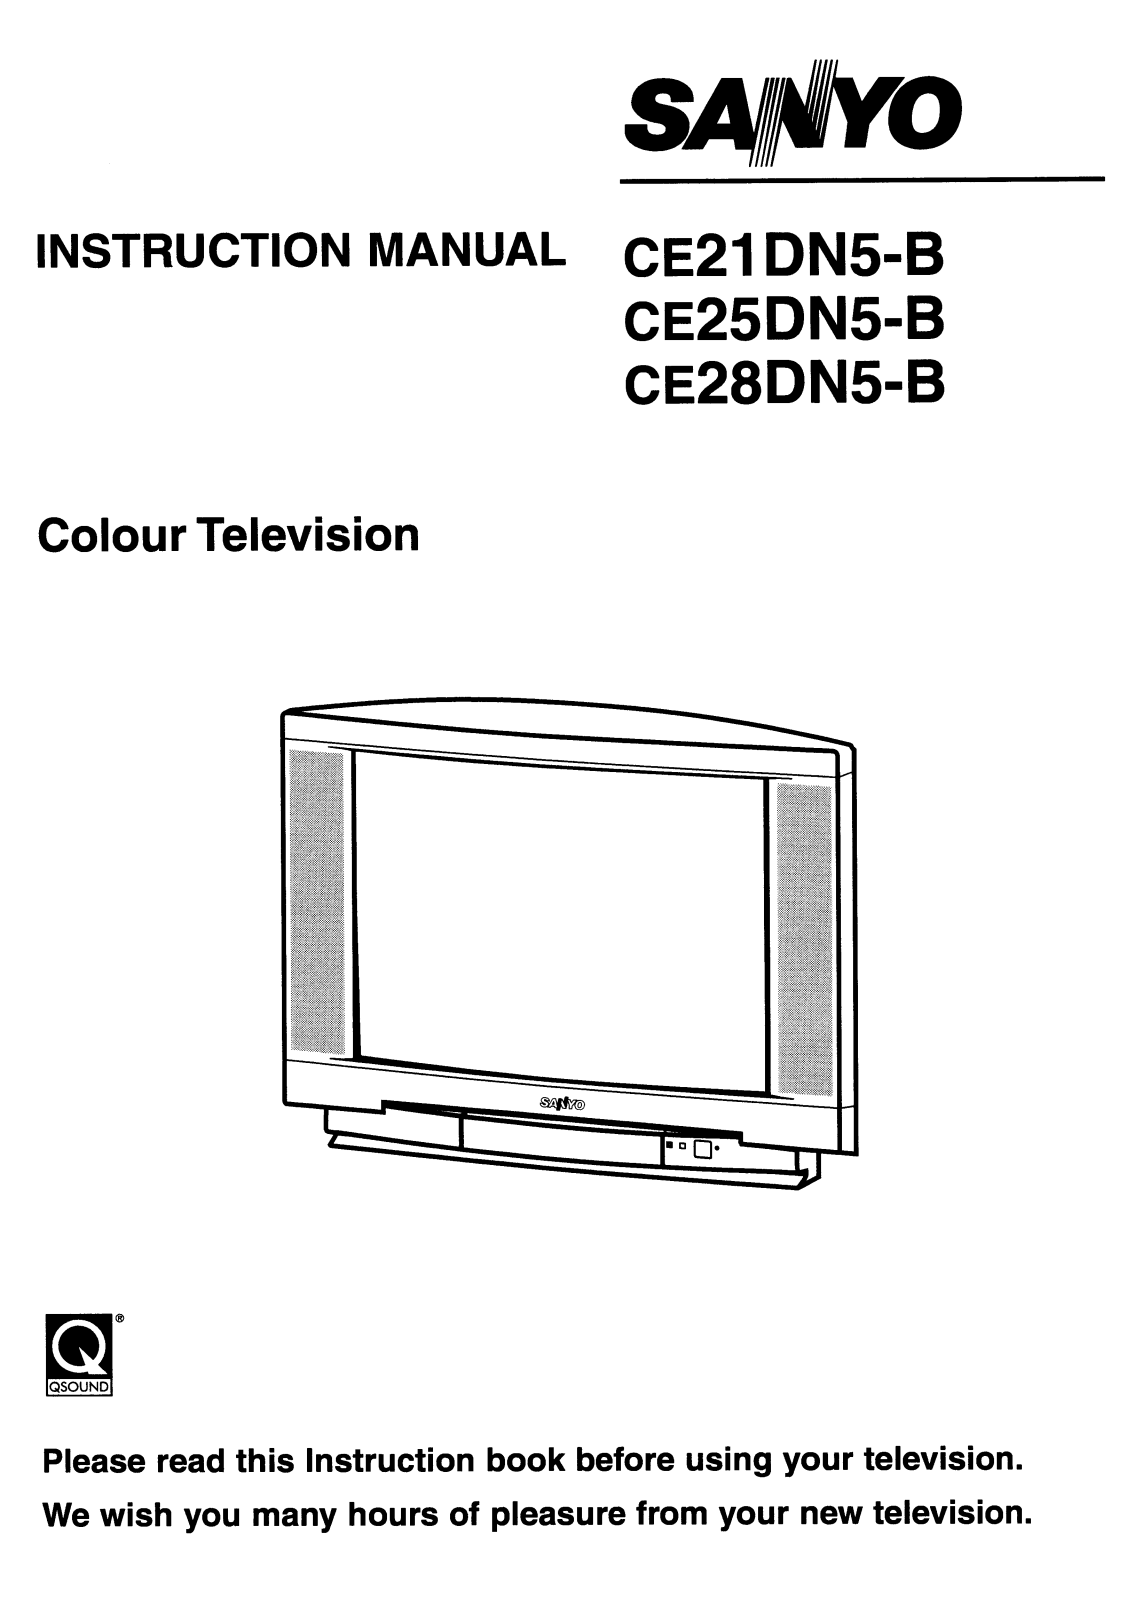 Sanyo CE21DN5-B, CE25DN5-B, CE28DN5-B Instruction Manual